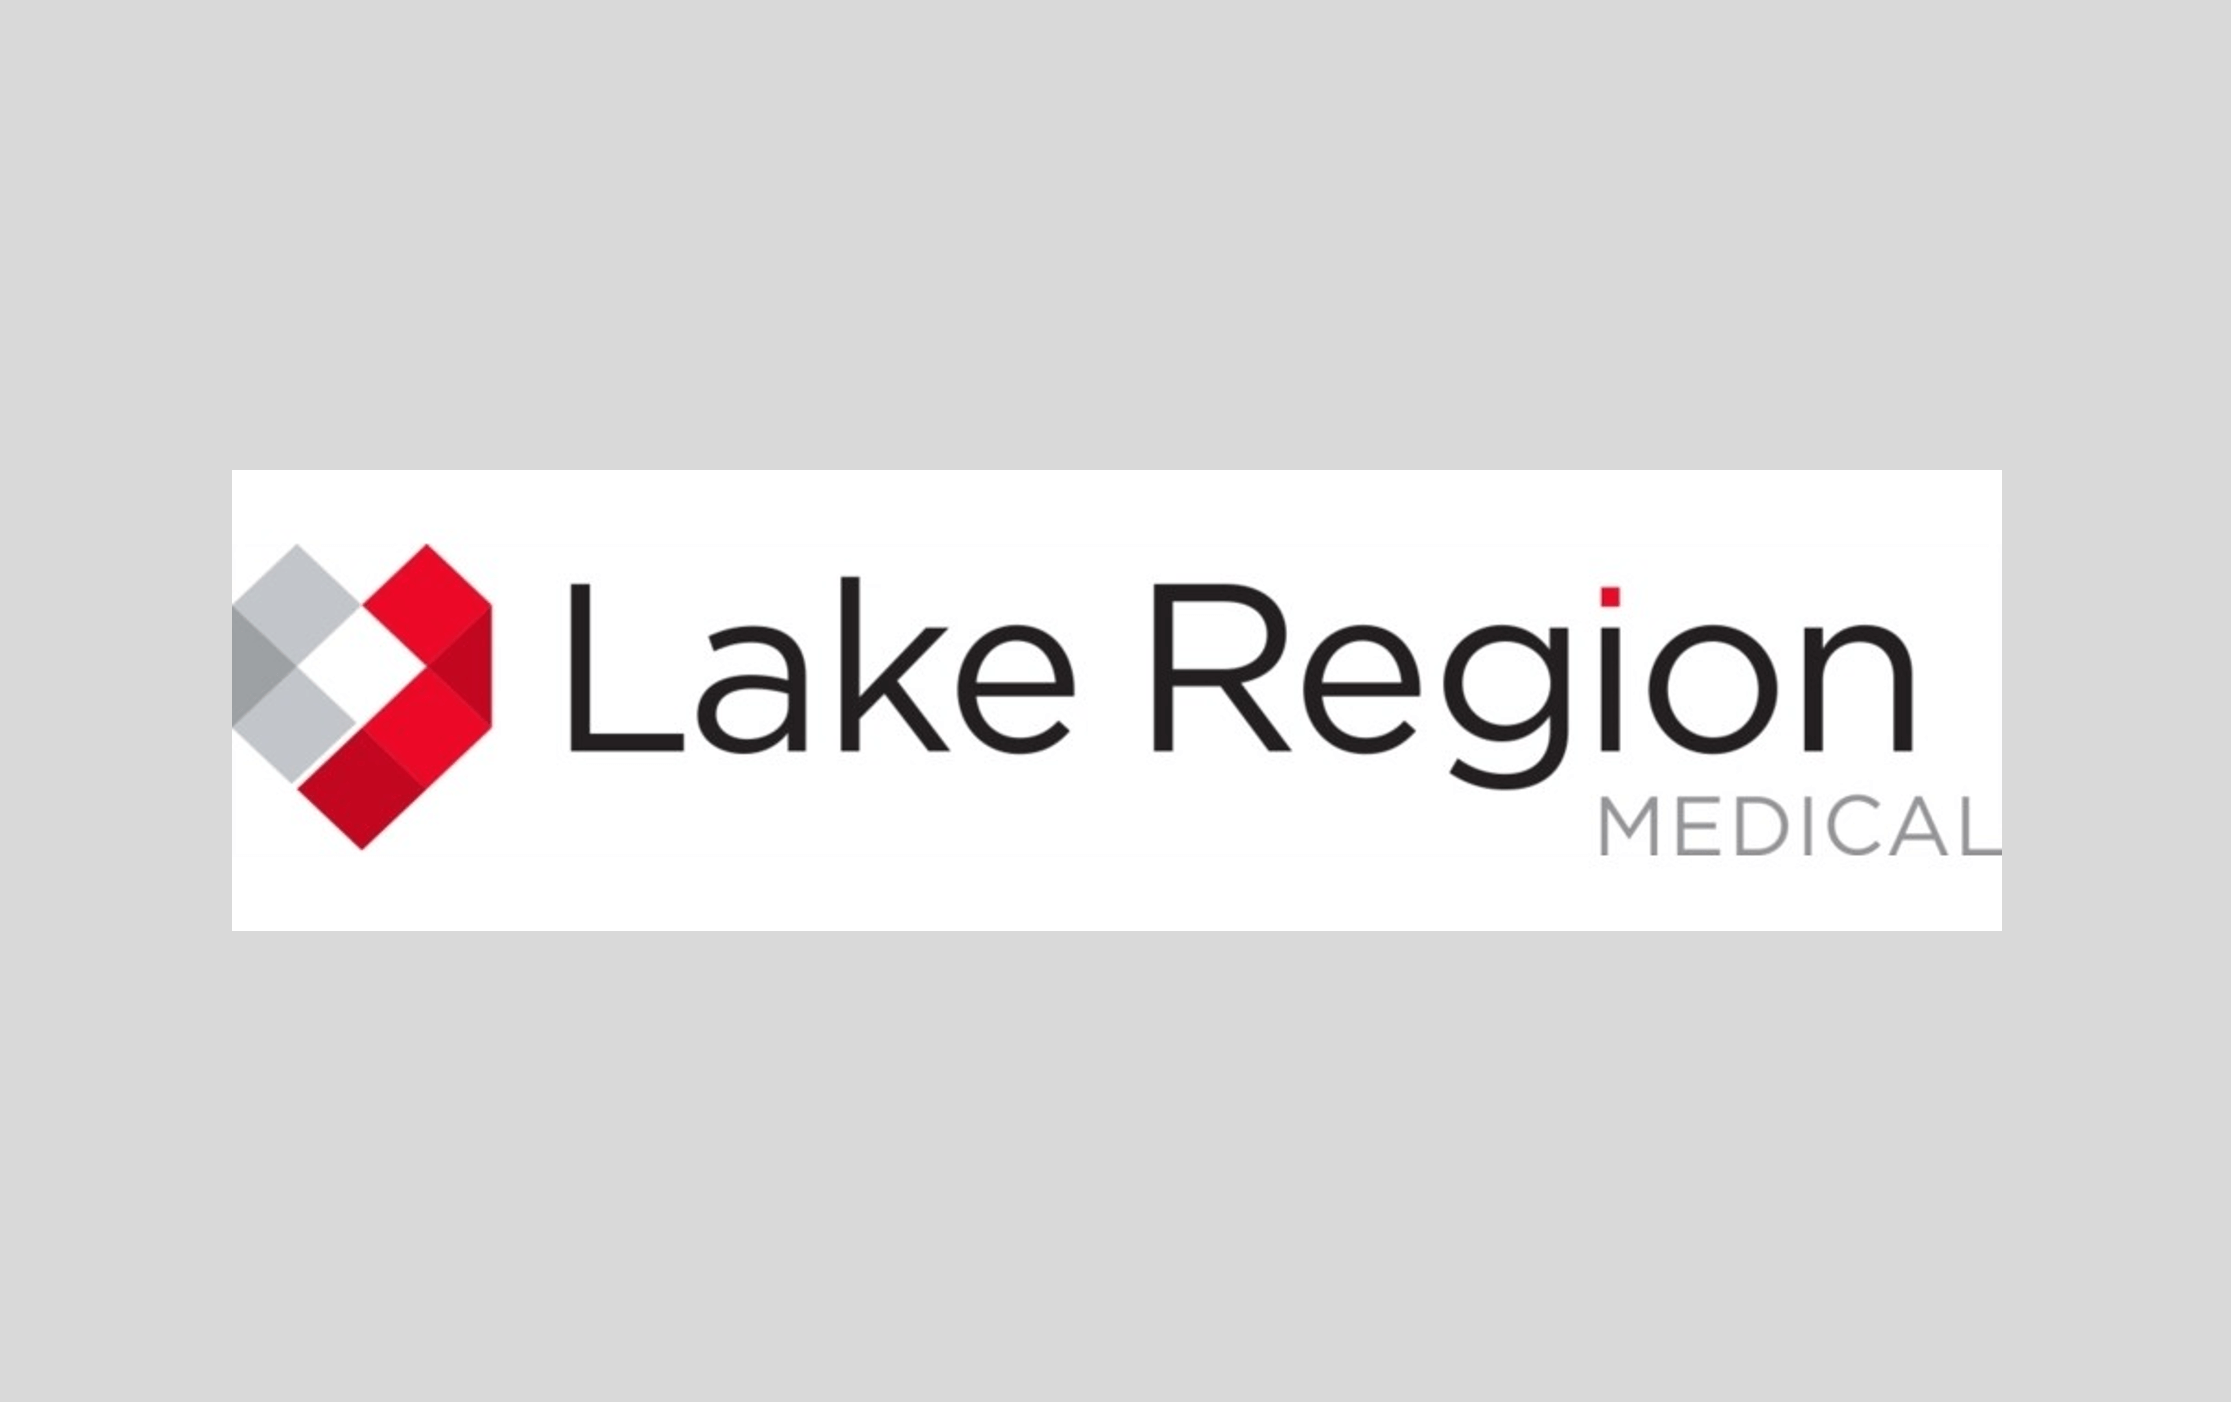 LakeRegion client